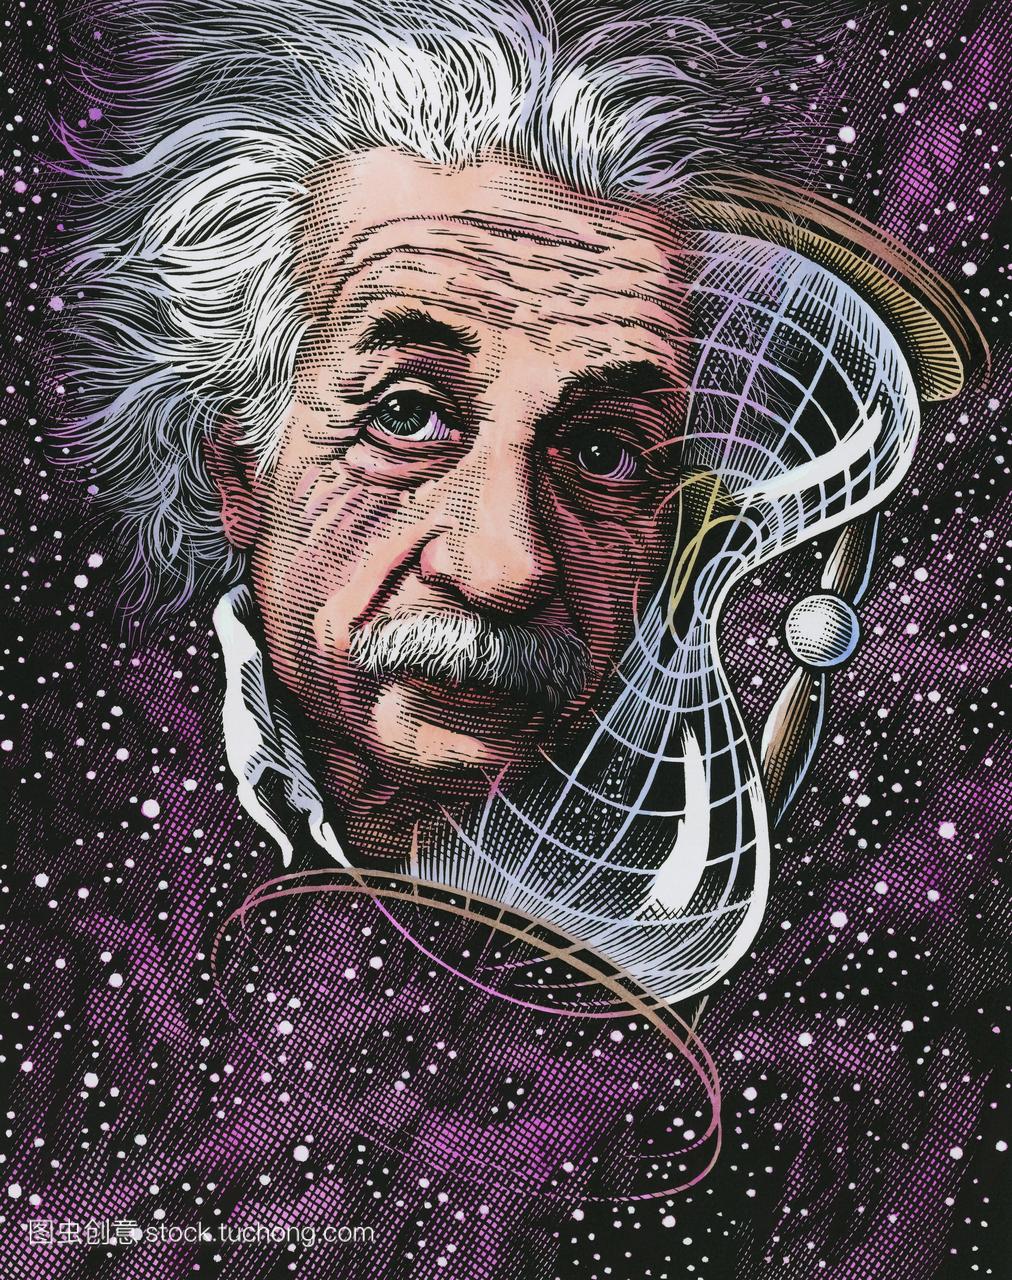 阿尔伯特·爱因斯坦1879-1955德国出生的物理